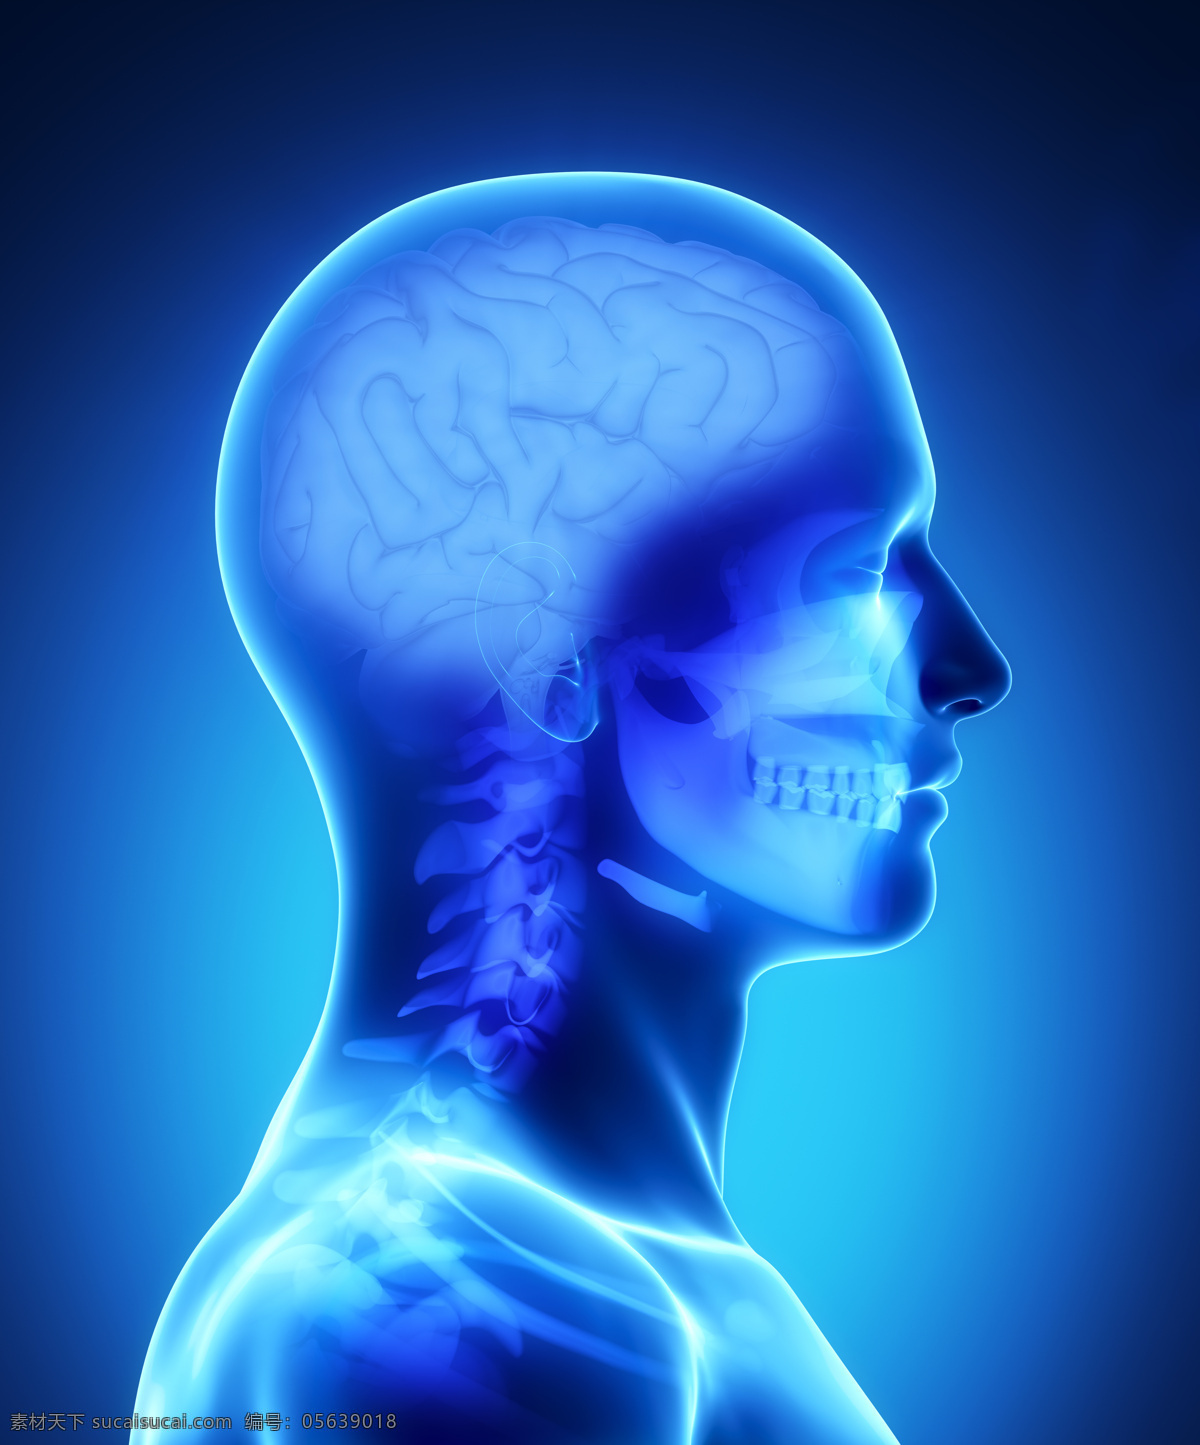 人体 大脑 器官 脊椎 骨骼 脊髓 男性人体器官 医疗科学 医学 人体器官图 人物图片